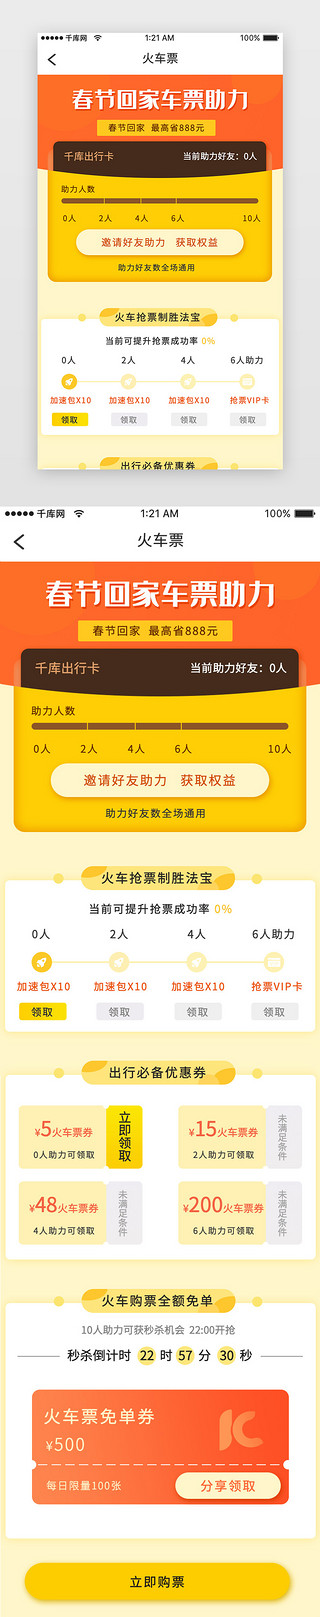 过年回家过年UI设计素材_橙色简约春节回家火车票助力h5活动页